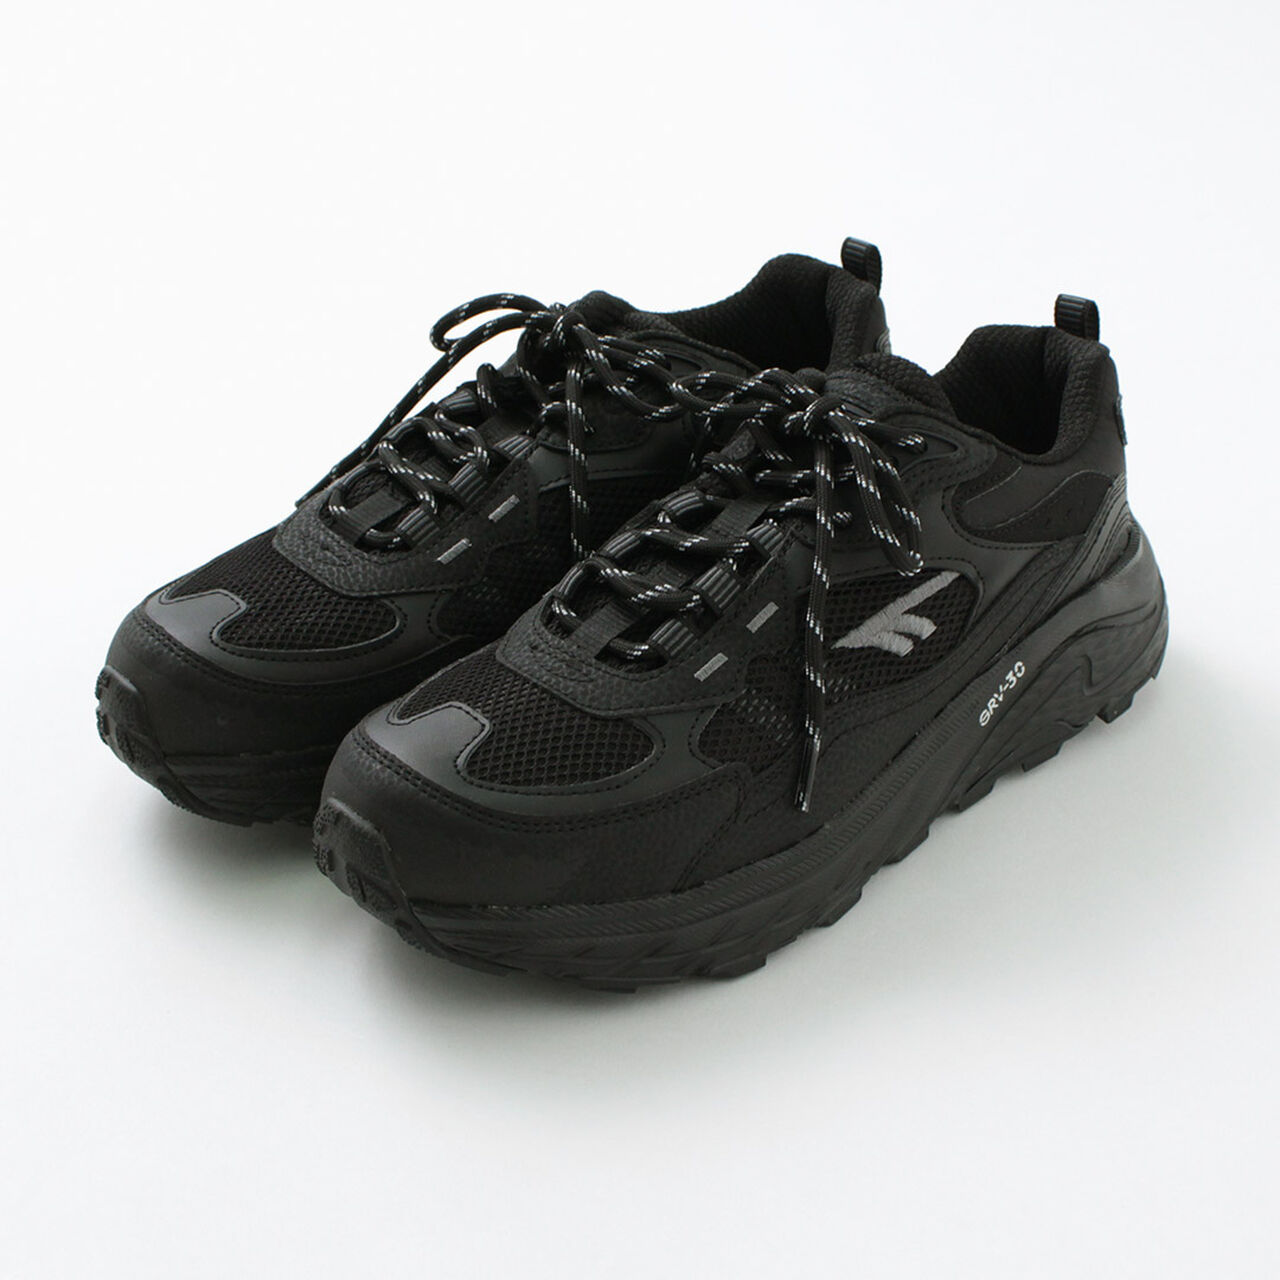 East End Waterproof Sneakers,Black, large image number 0